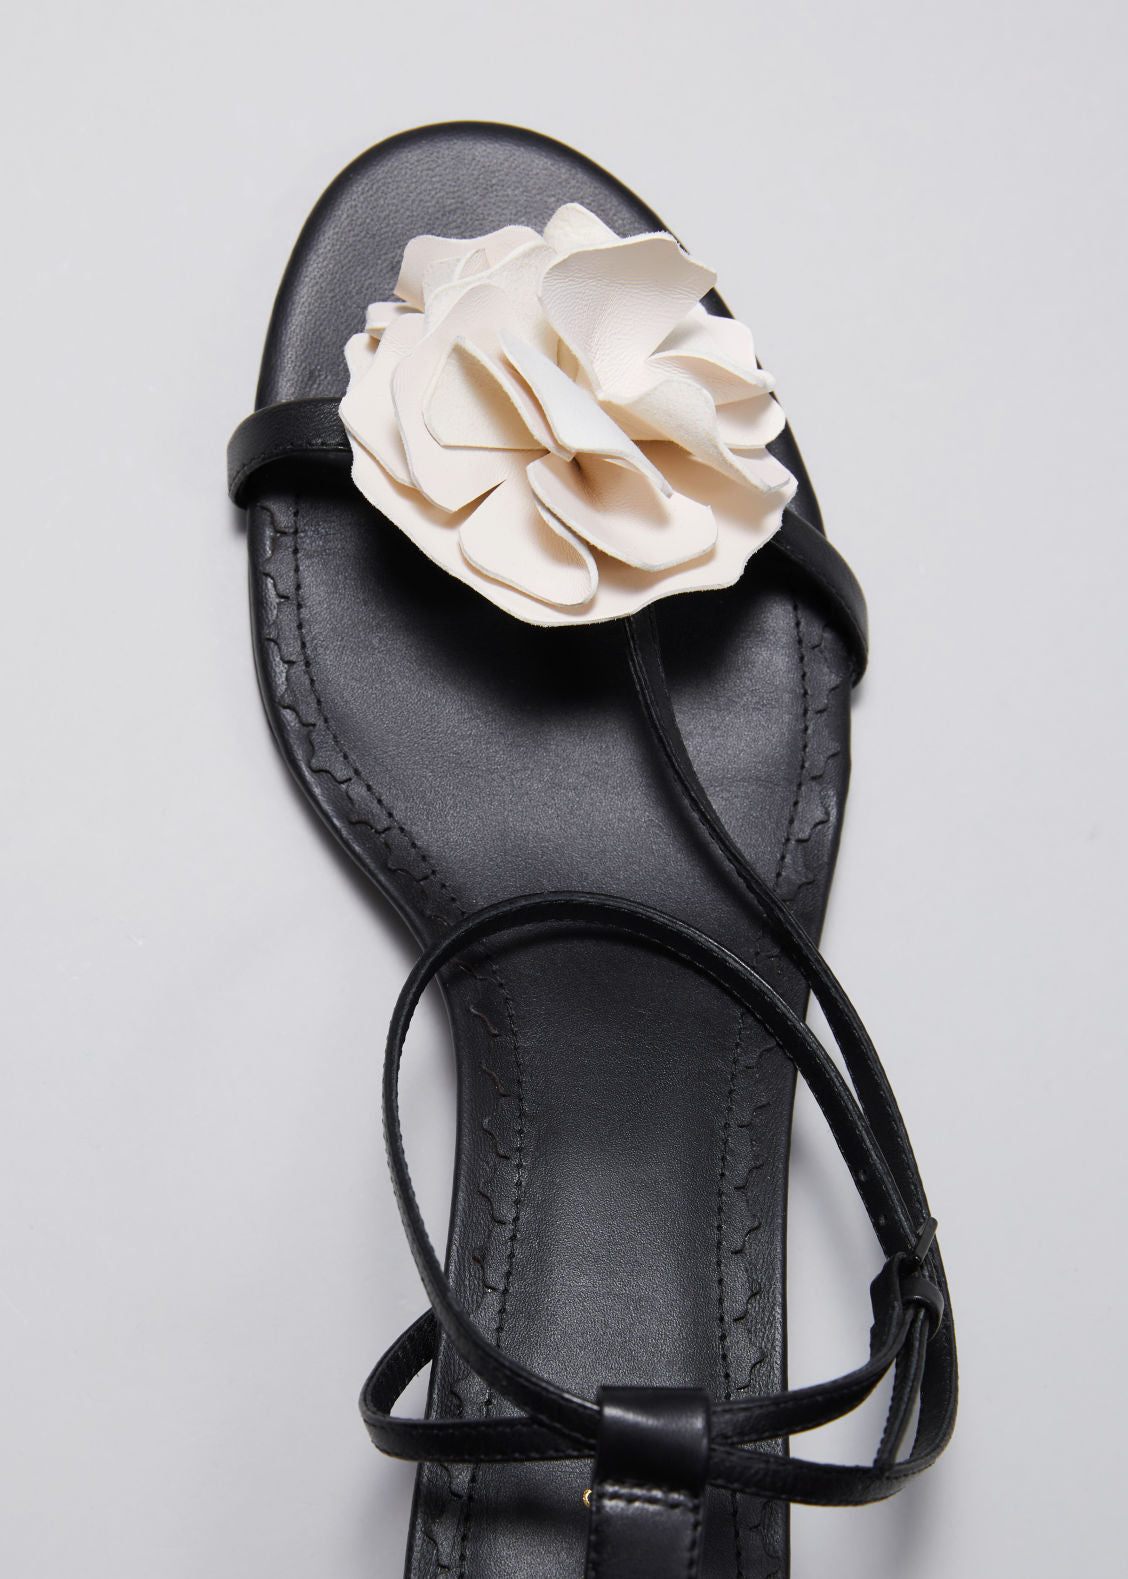 Floral appliqué leather sandals